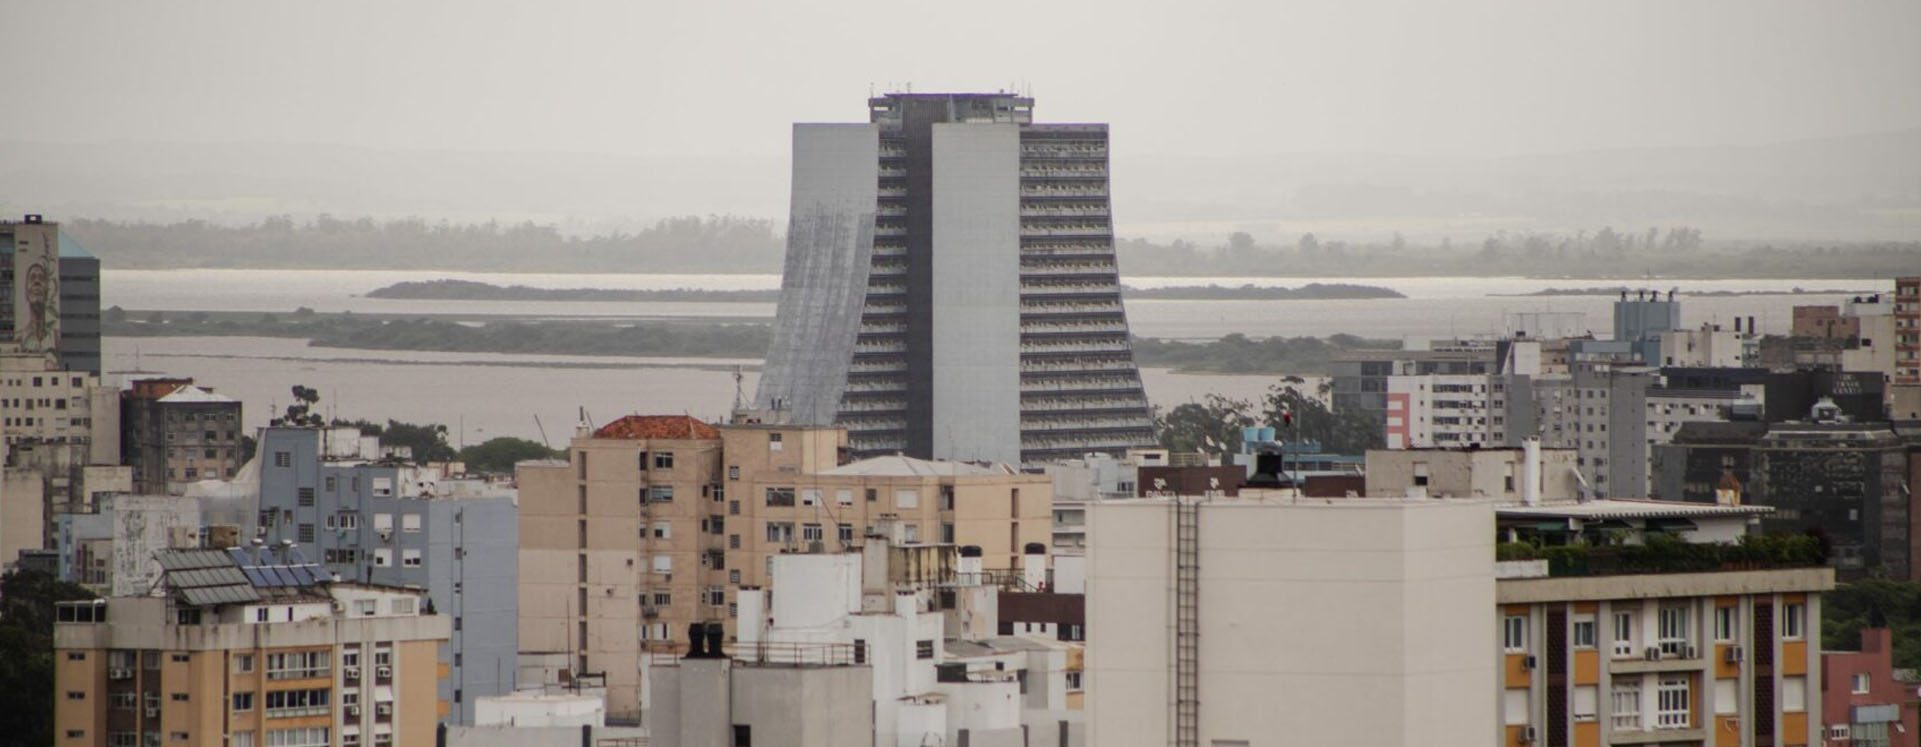 Como um restrito grupo de empresários mudou a lógica do planejamento urbano  de Porto Alegre - Sul 21